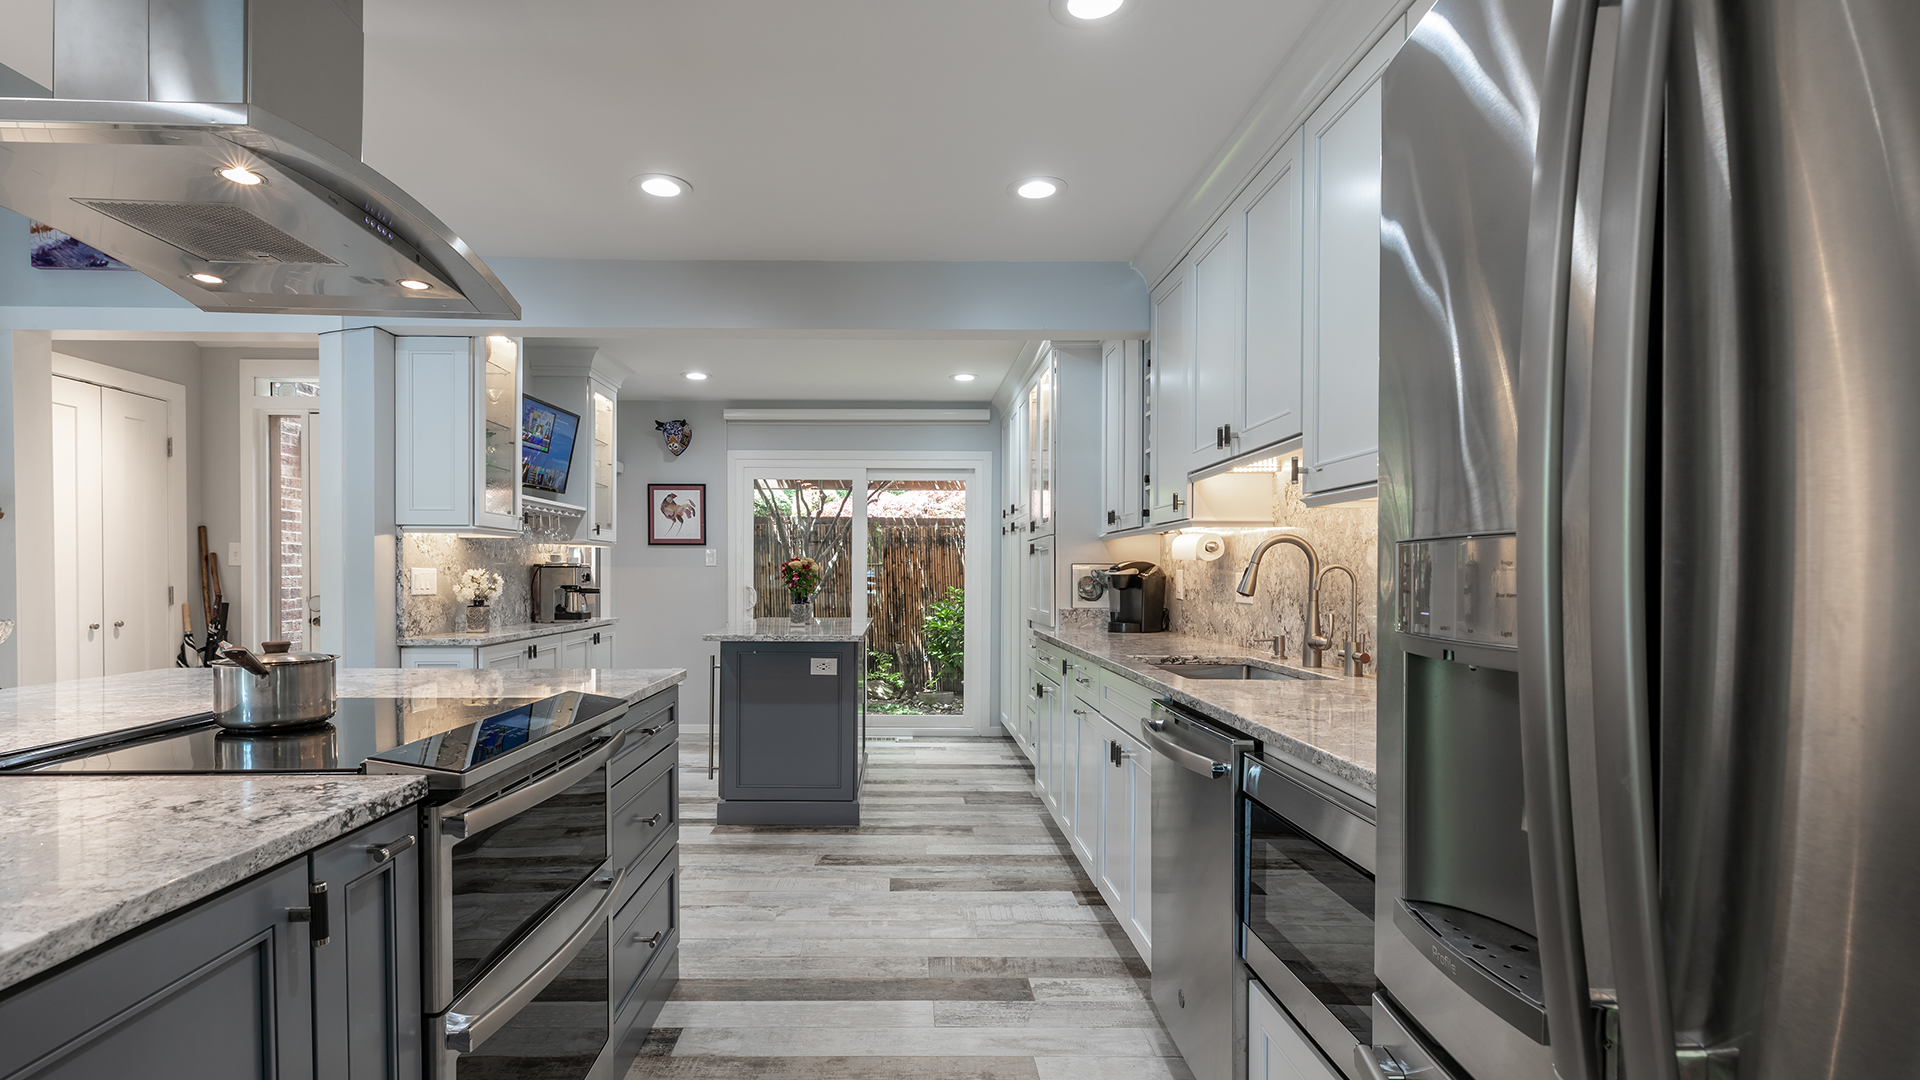 2021 Qualified Remodeler, Master Design Awards, Bronze, Kitchen Below $75,000